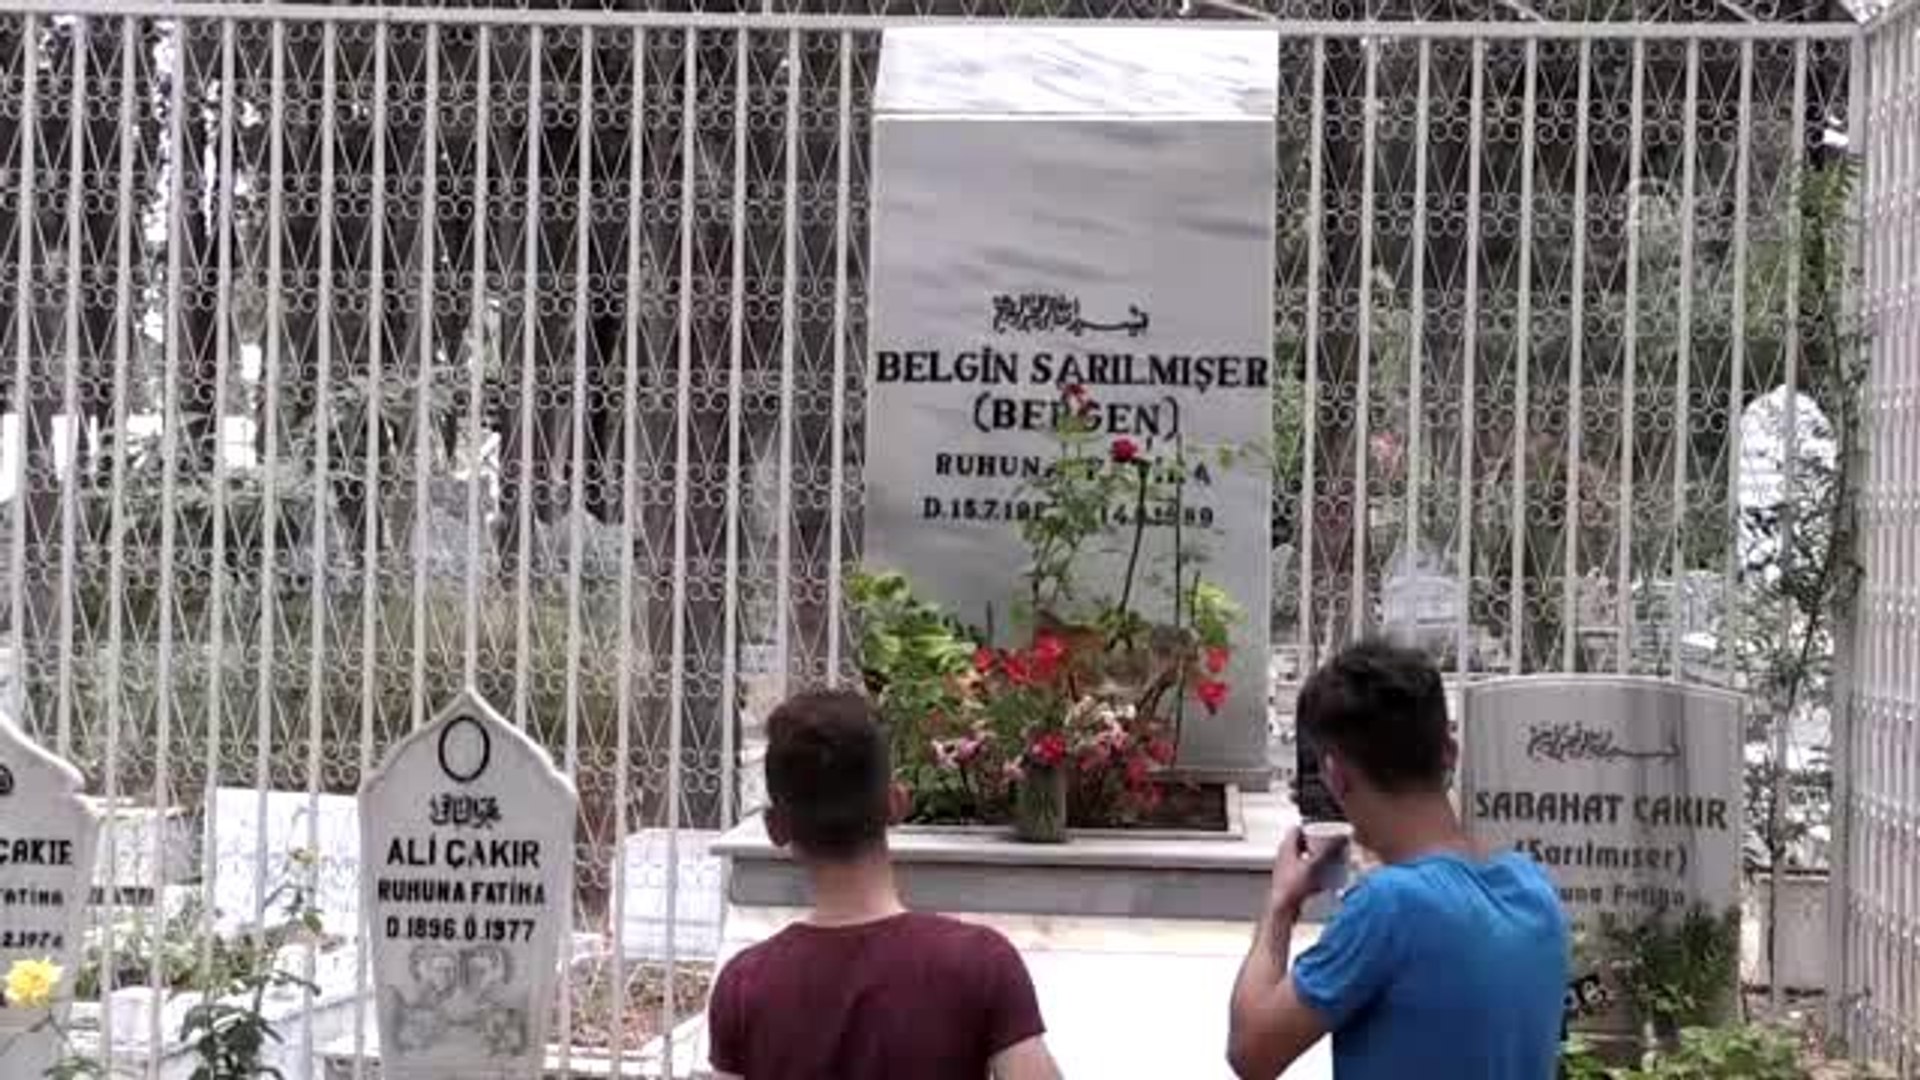 Şarkıcı Bergen mezarı başında anıldı -MERSİN - Dailymotion Video